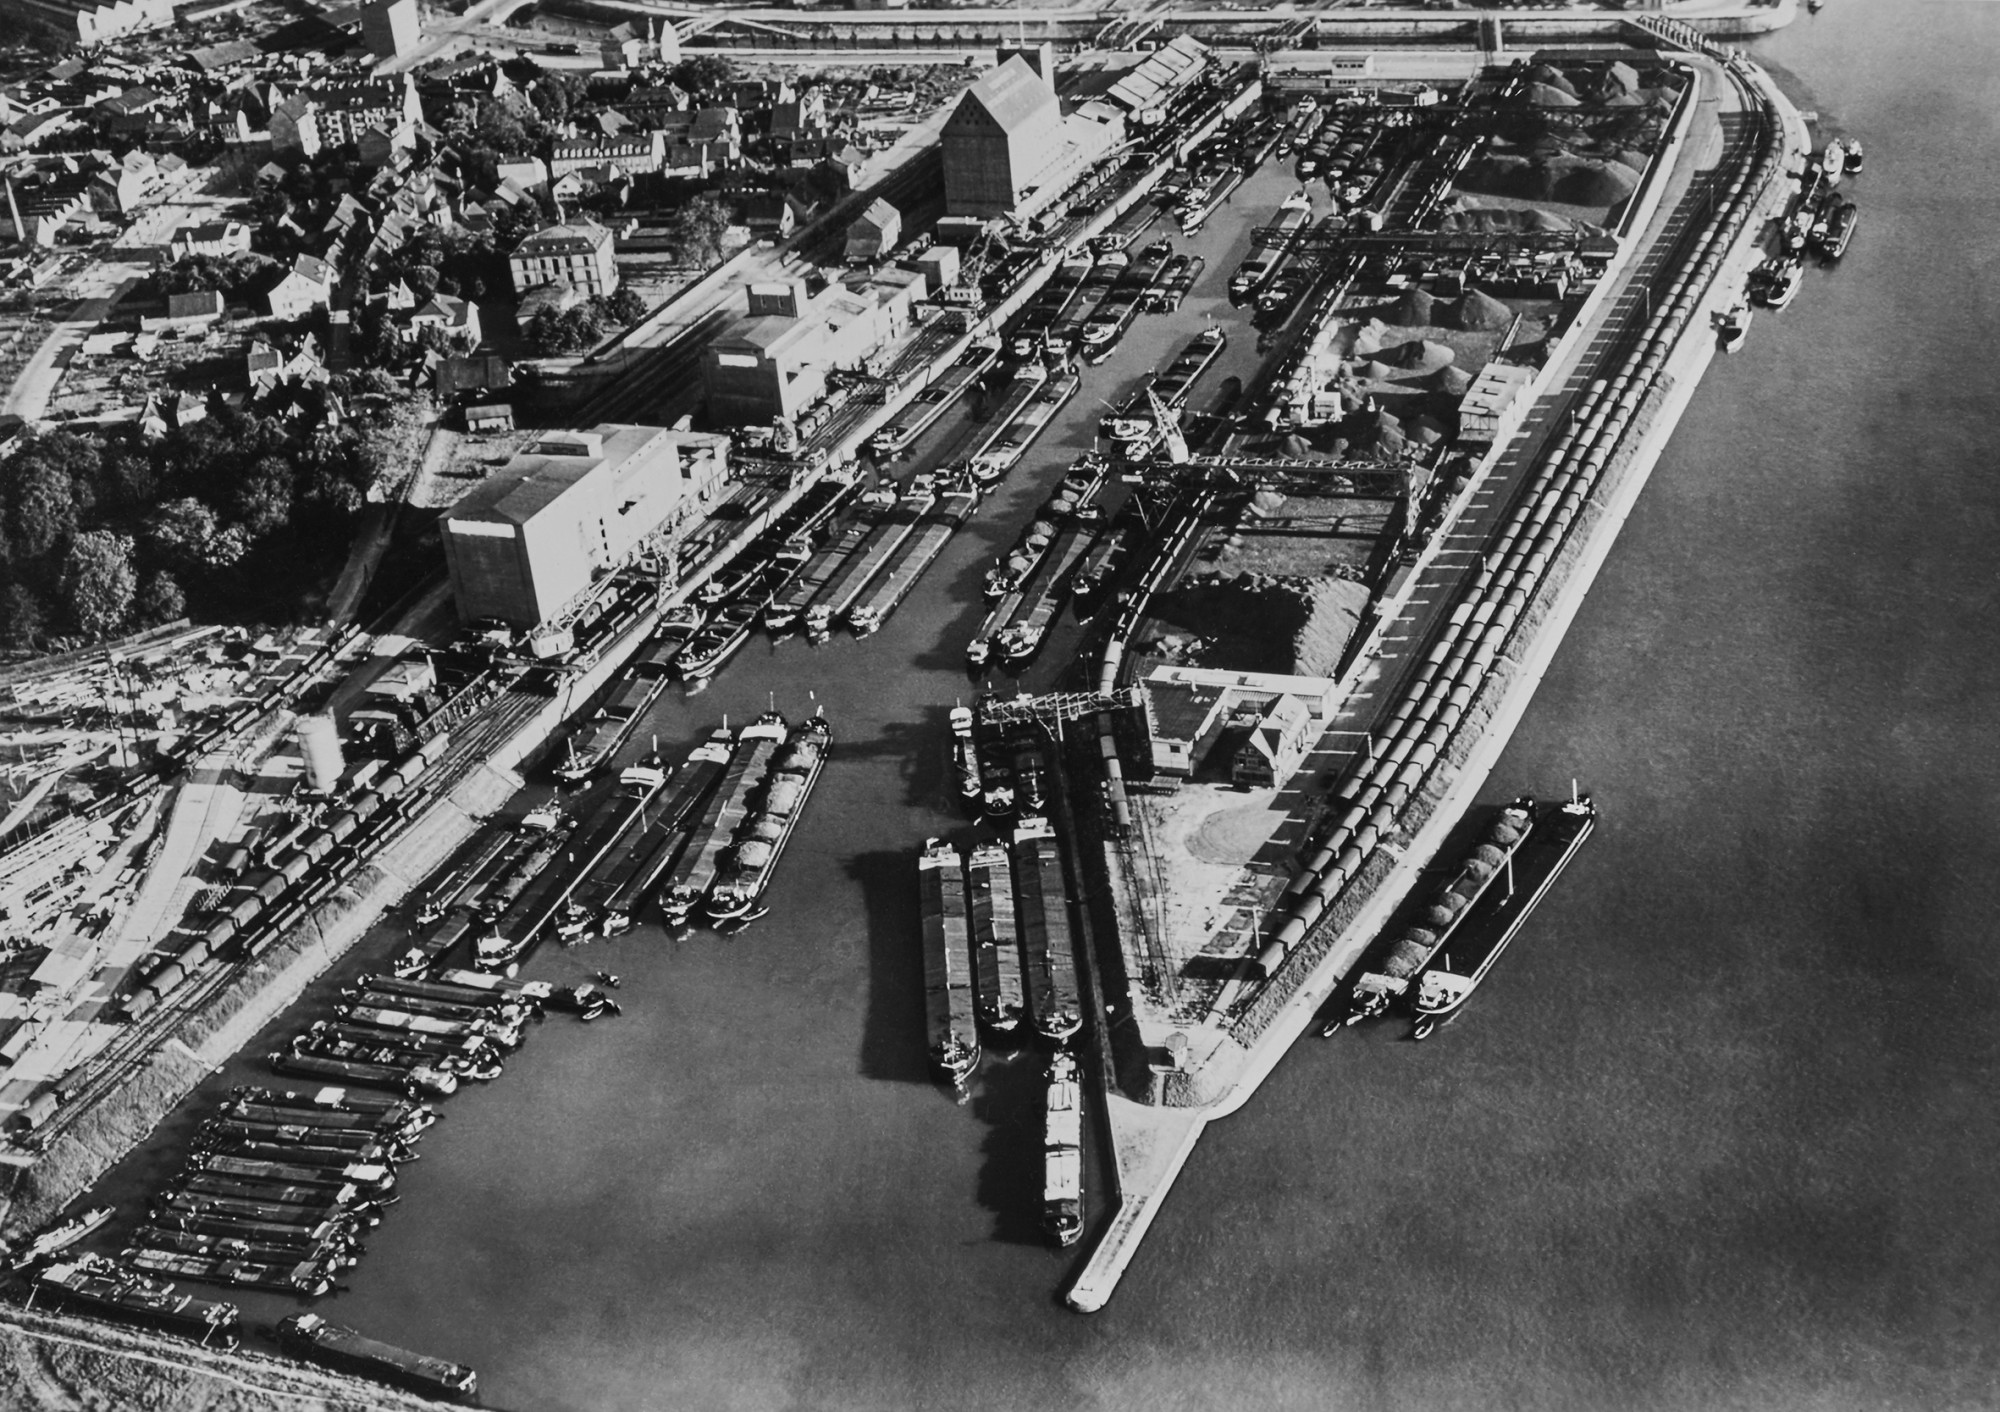 Rheinhafen Basel-Kleinhüningen, hafenbecken I mit Silogebäuden, Fotograf vermutlich Walter Mittelholzer, 1930er Jahre